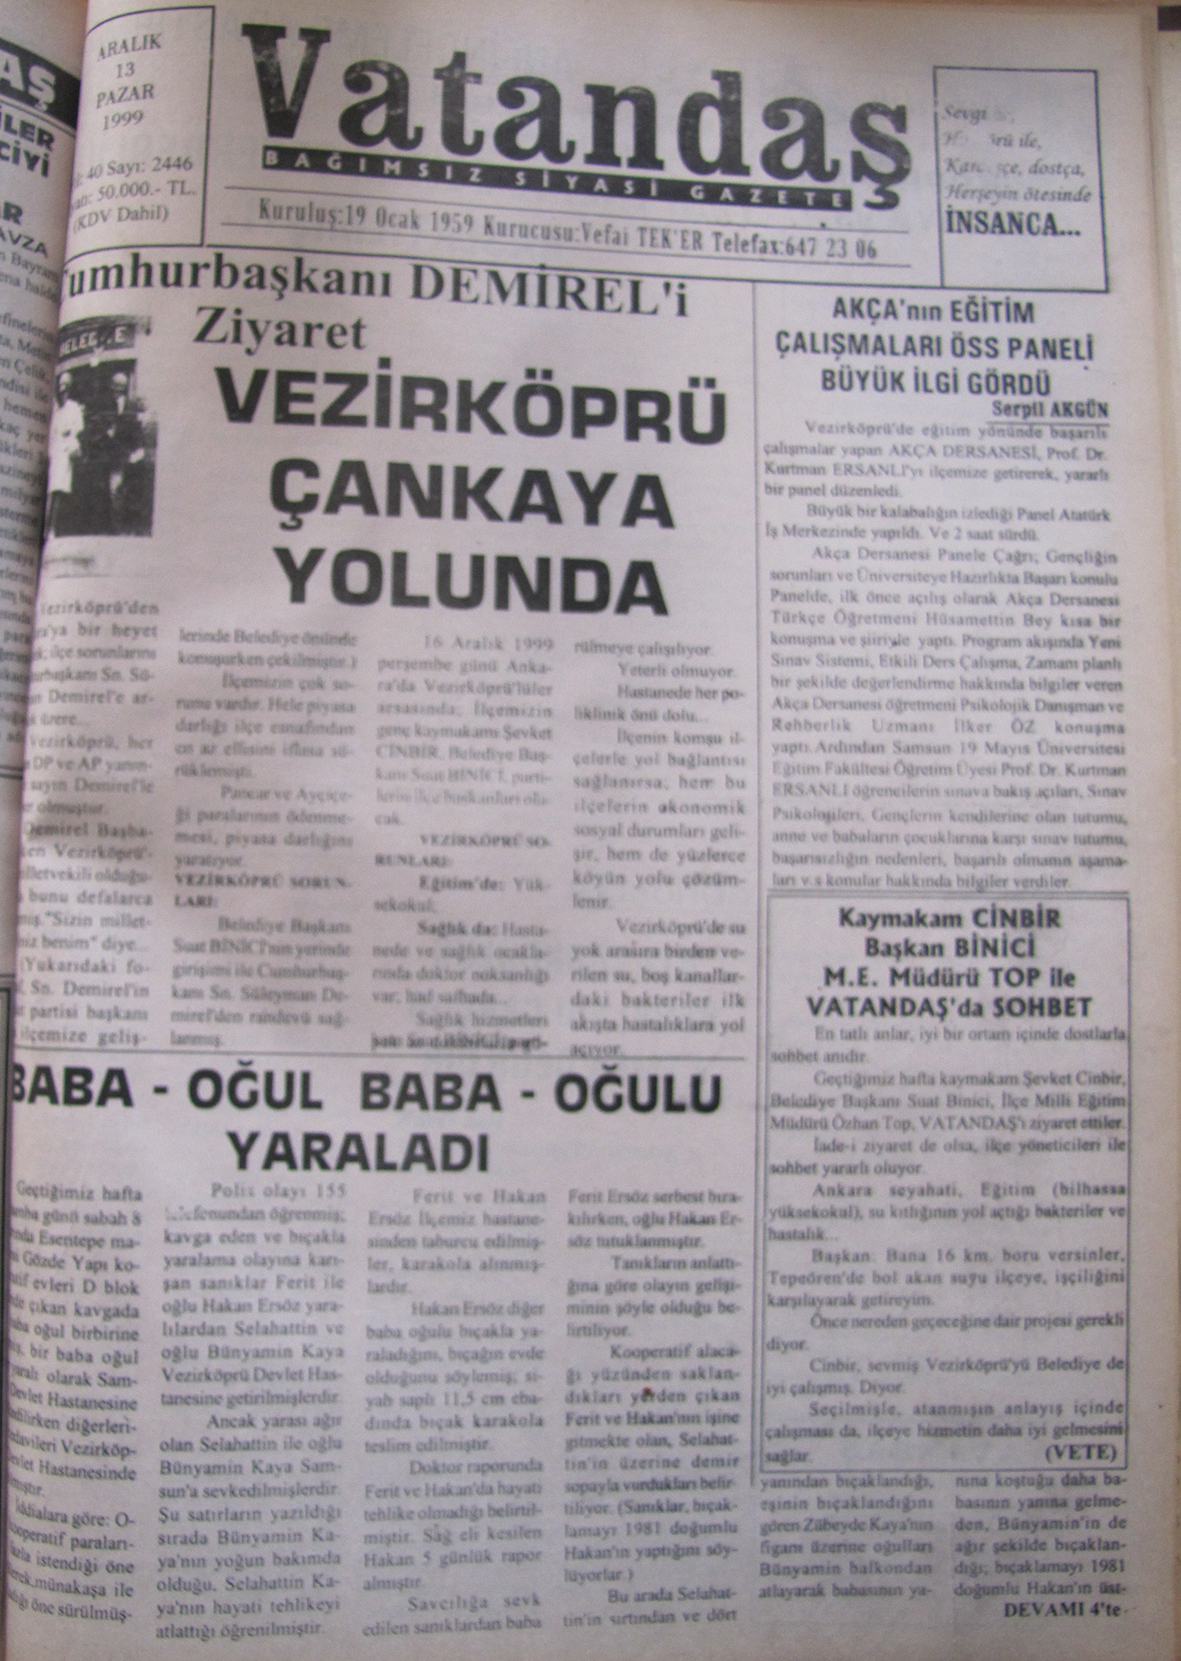 Cumhurbaşkanı Demirel’i Ziyaret Vezirköprü Çankaya Yolunda 13 Aralık 1999  Pazar